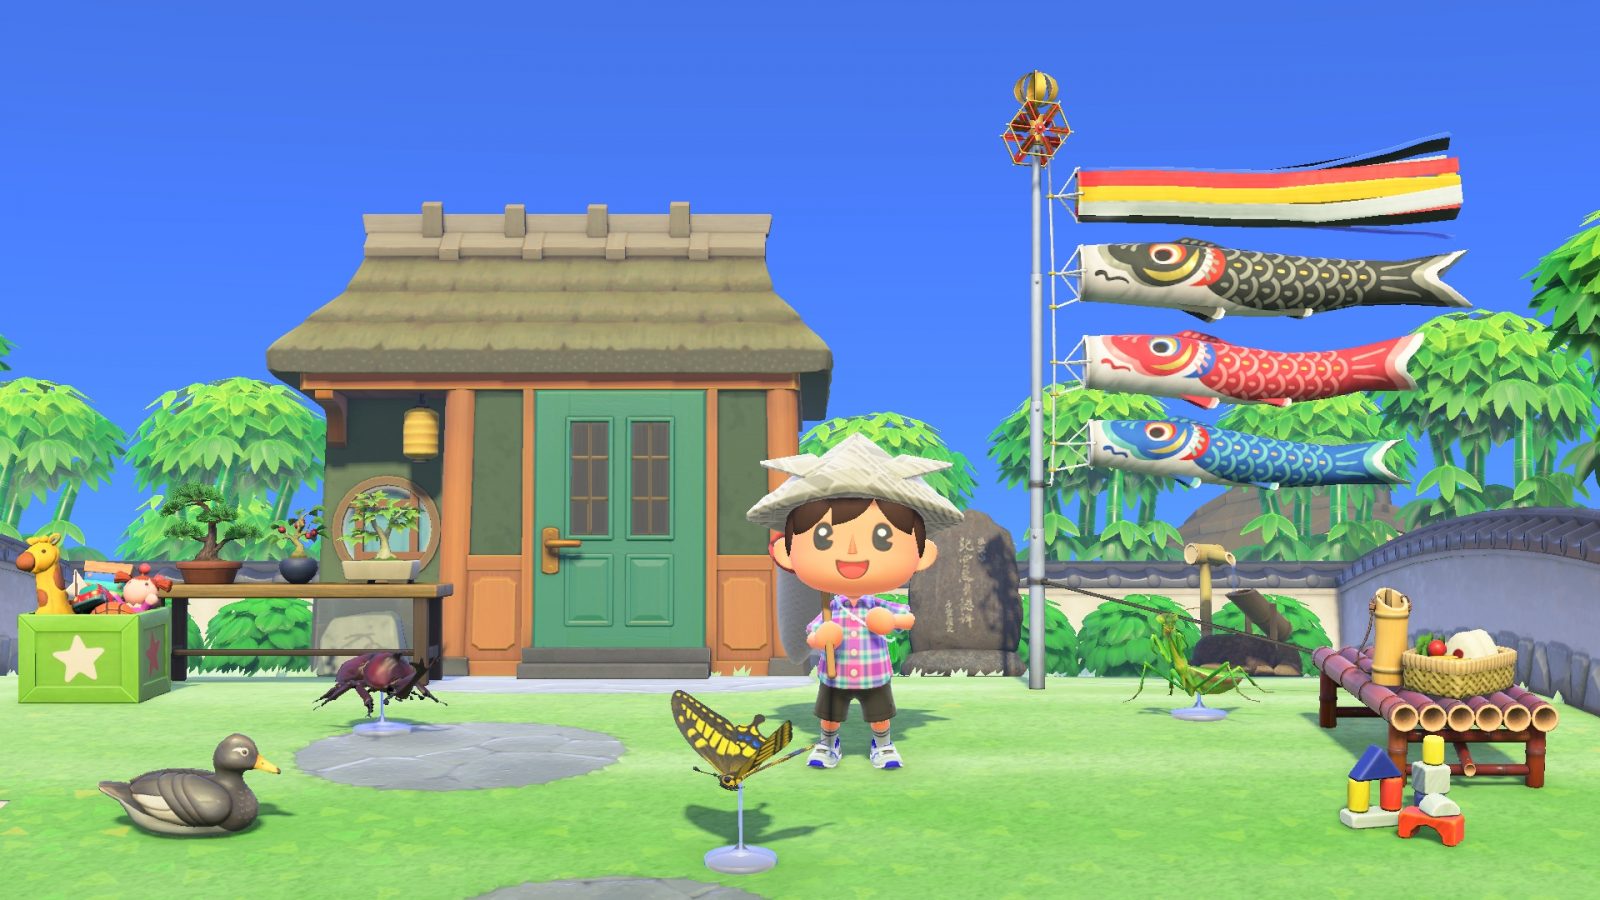 Nintendo confirma que a casa misteriosa da imagem do update de Animal Crossing: New Horizons era apenas um erro